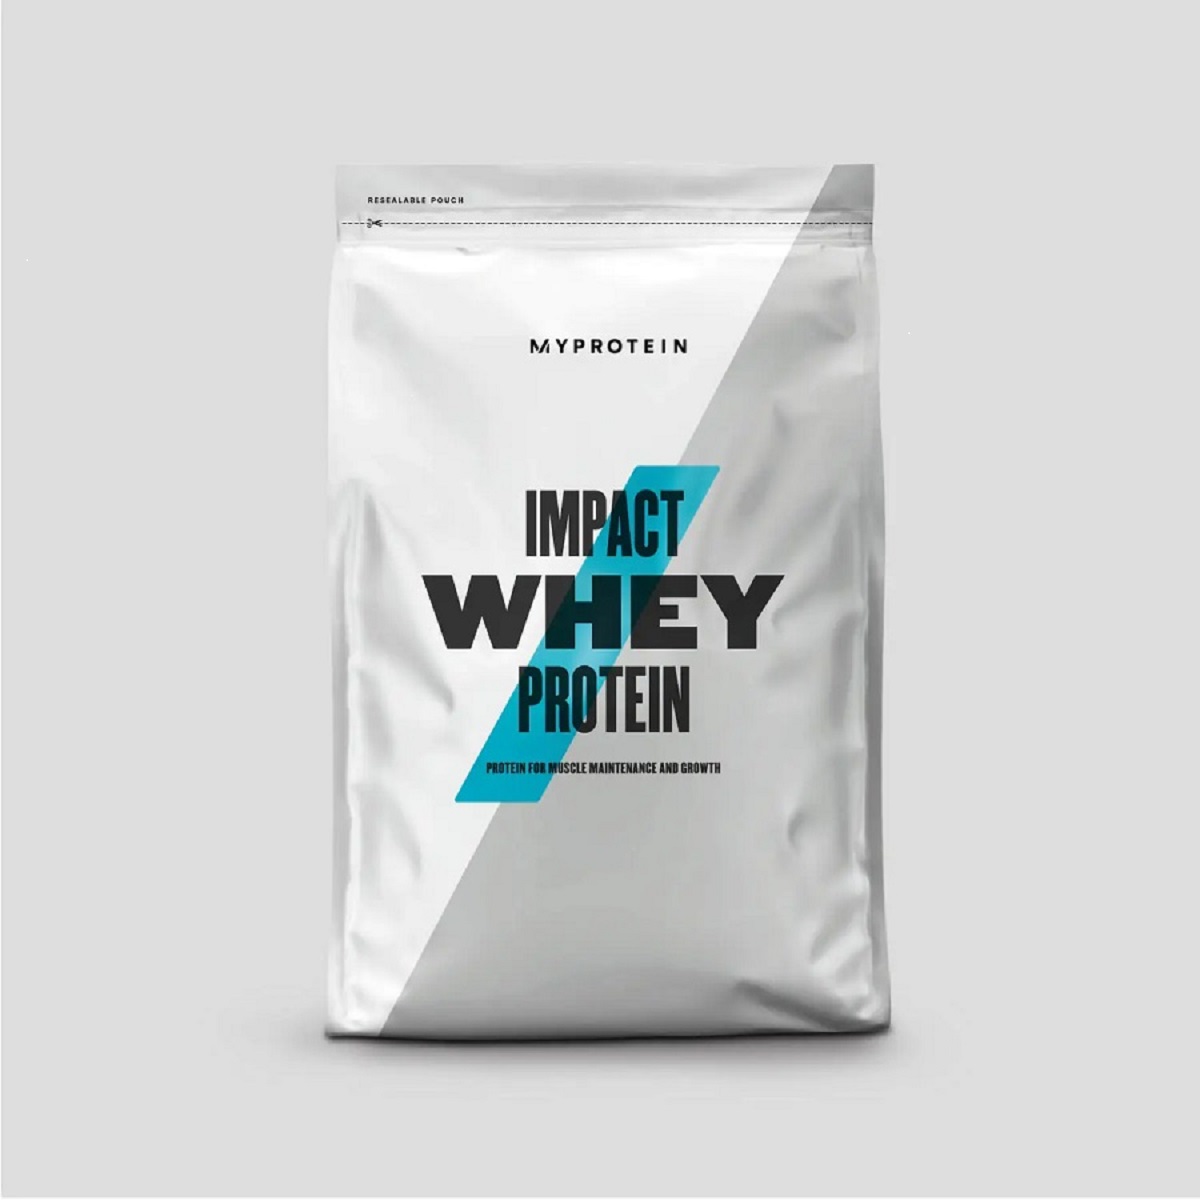 マイプロテイン ホエイ プロテイン インパクト 1kg 全40種類 セール トレーニング ダイエット チョコレート 健康 Myprotein Impact Whey Protein